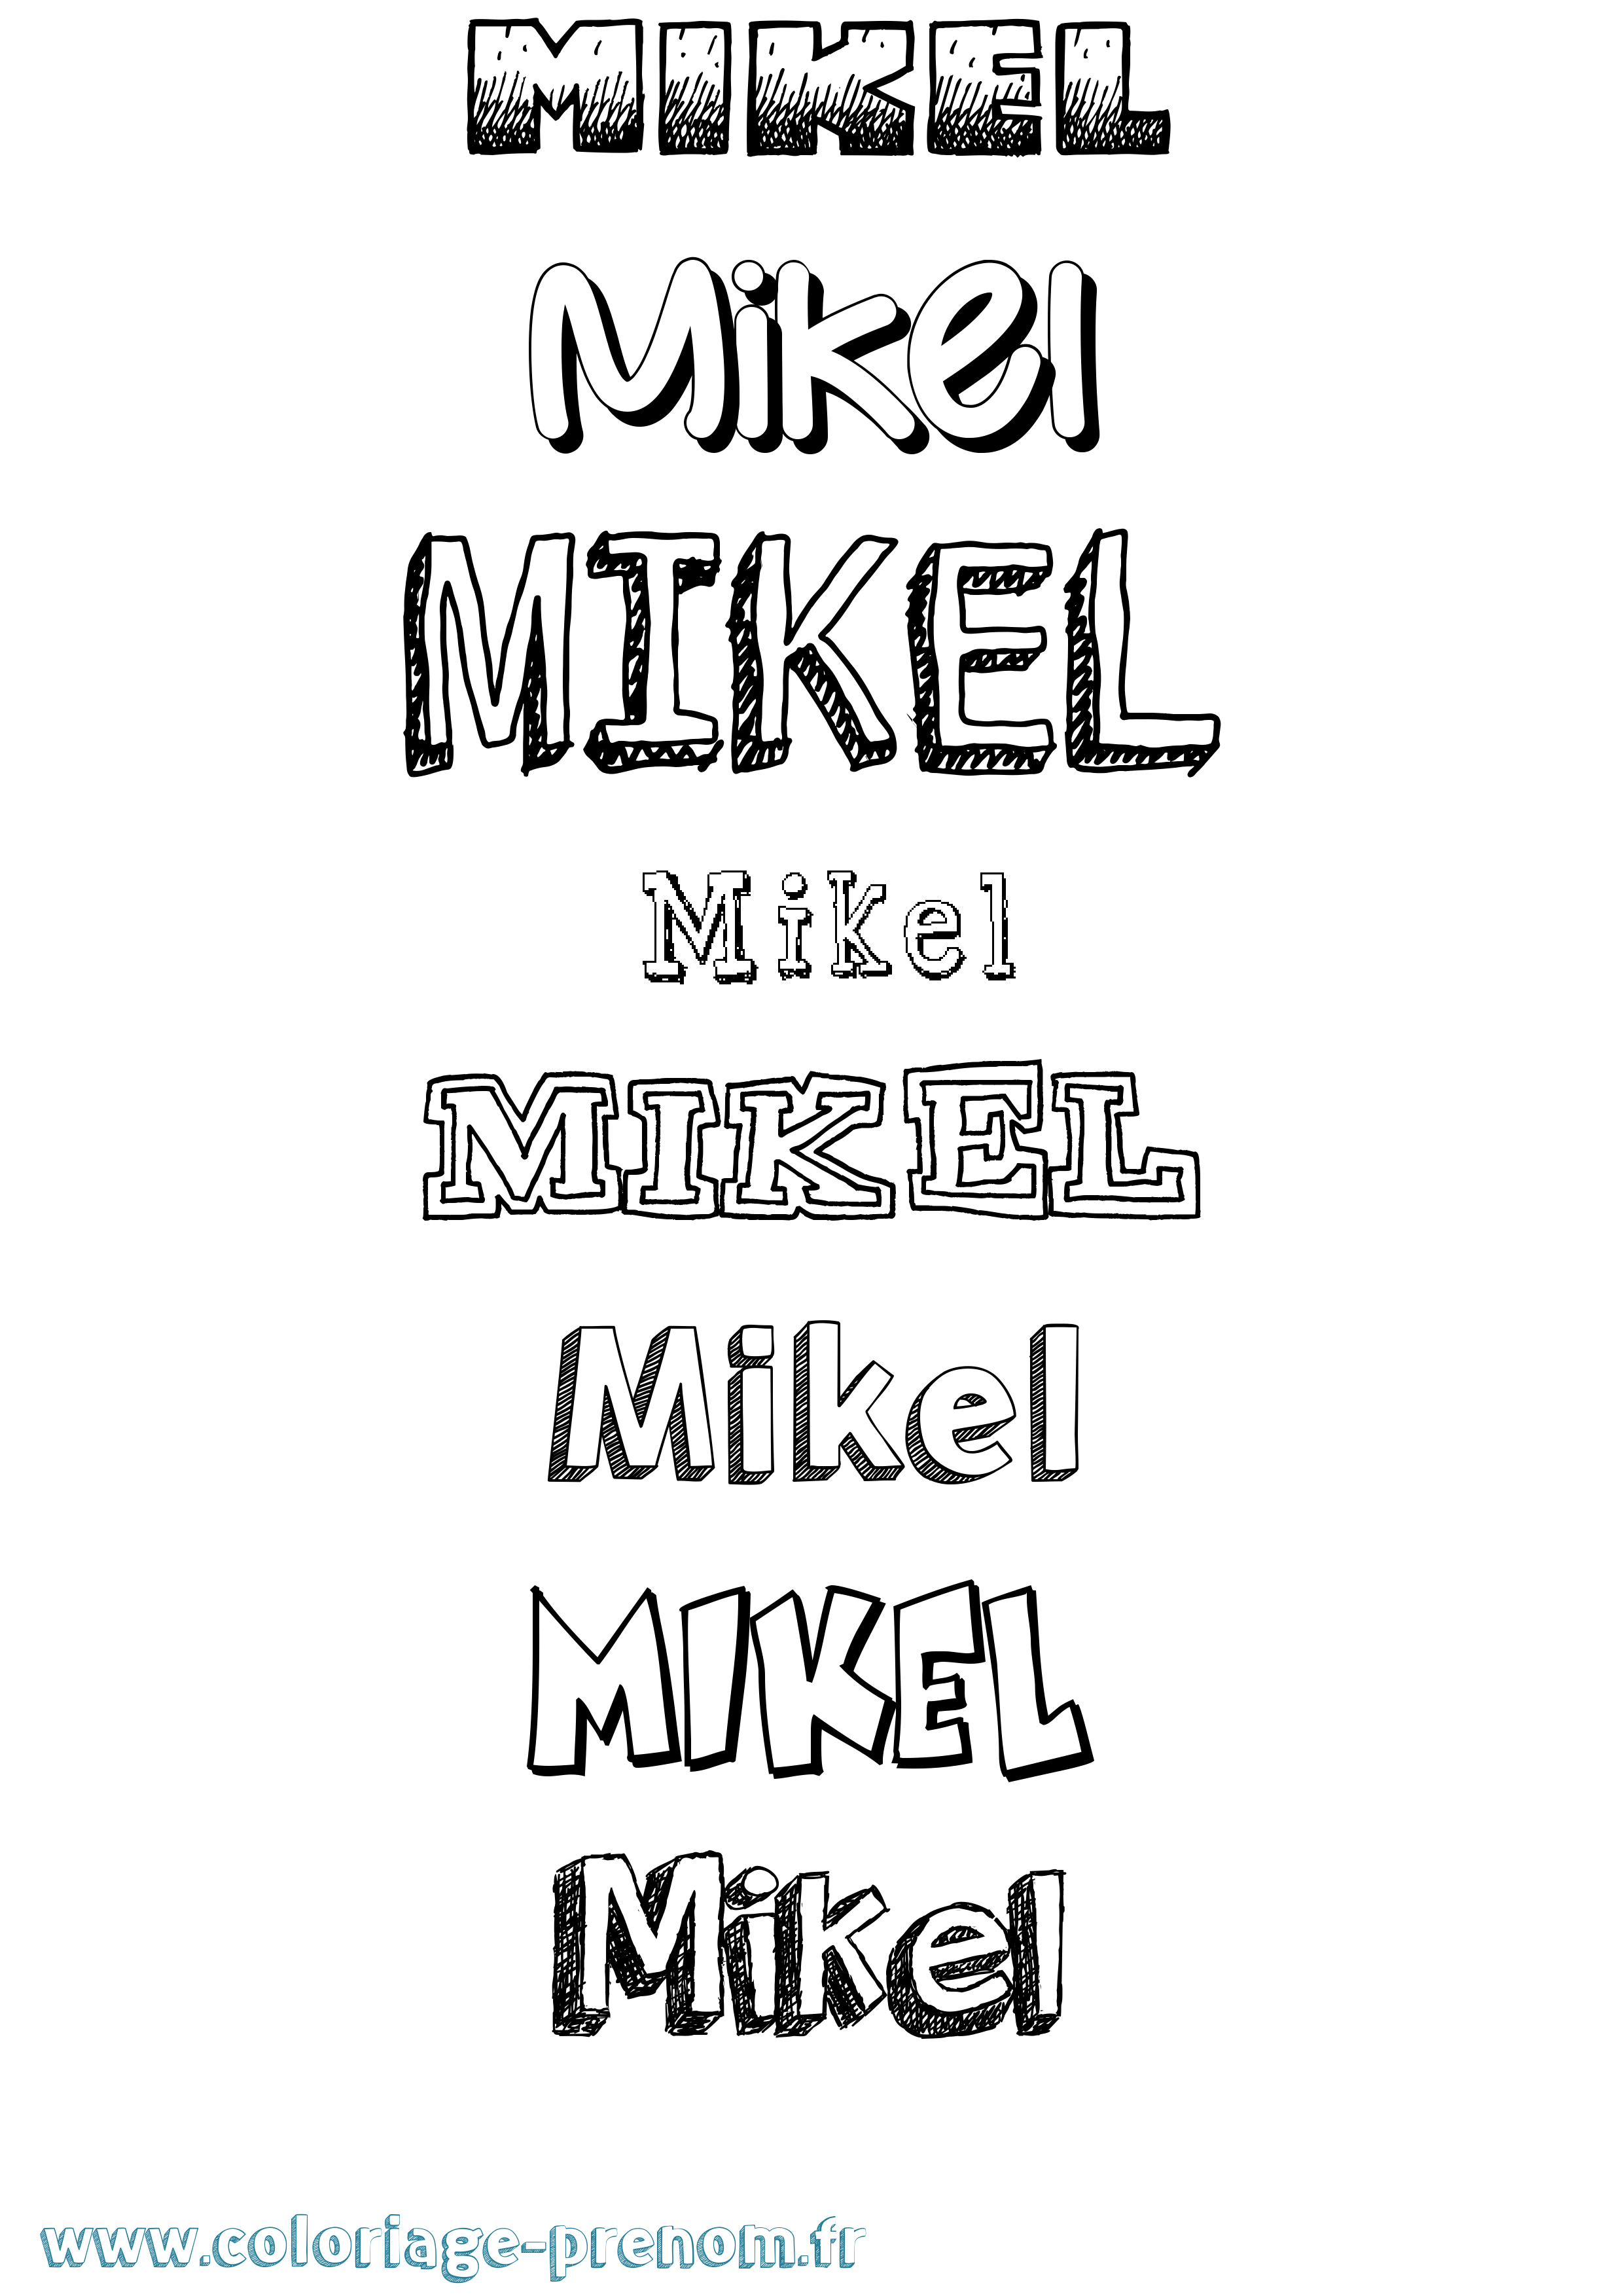 Coloriage prénom Mikel Dessiné